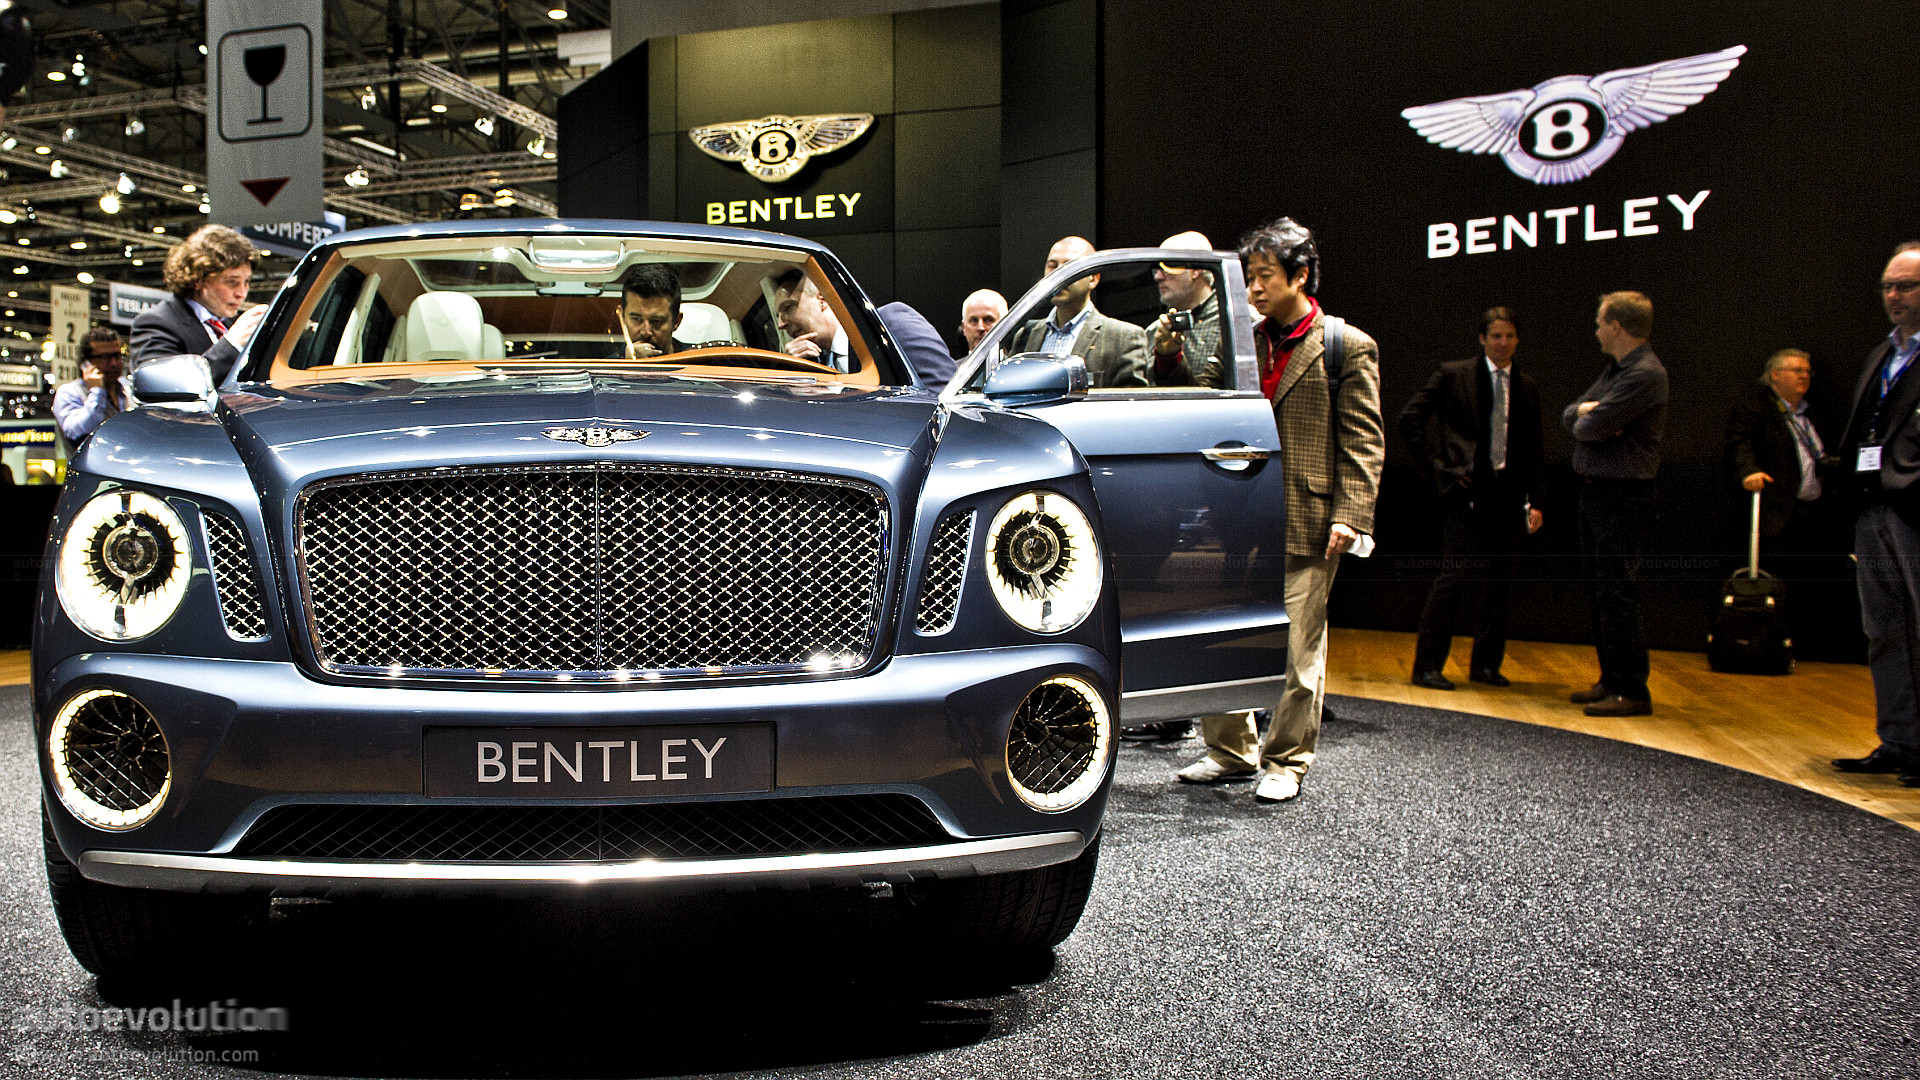 Bentley Exp 9 F Concept Wallpapers